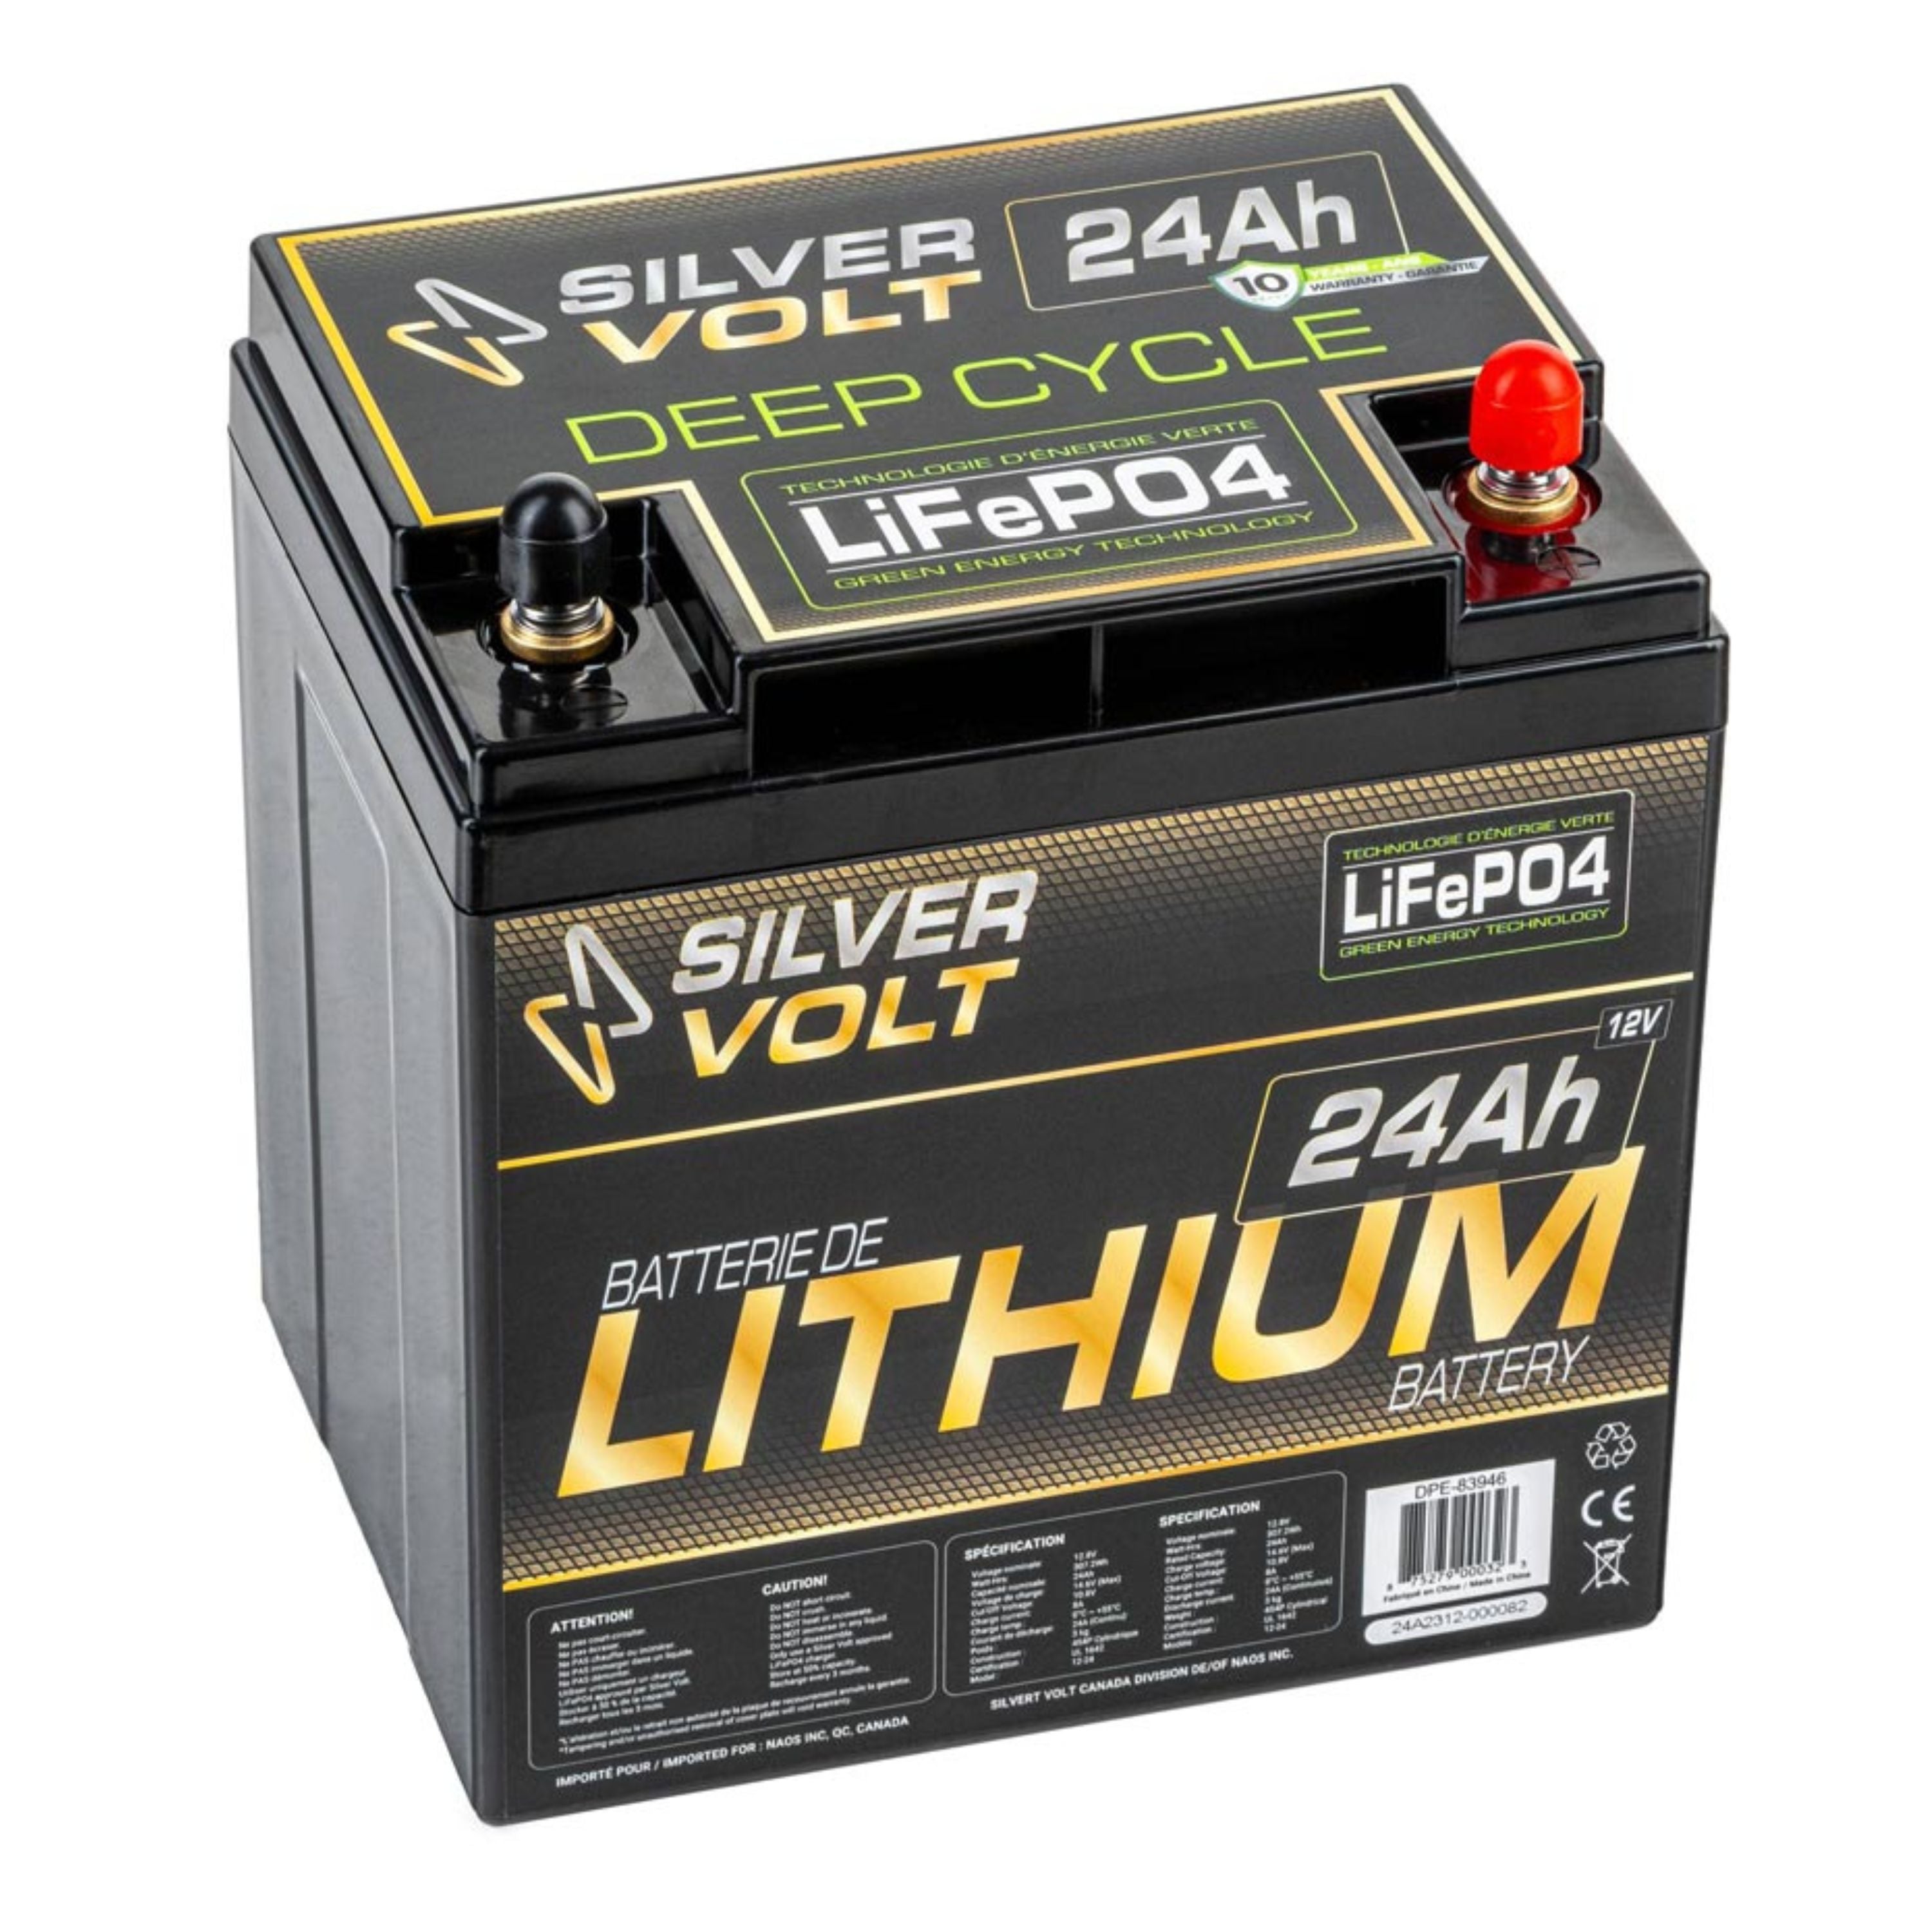 Batterie au lithium rechargeable "LiFePO4" - 24 A